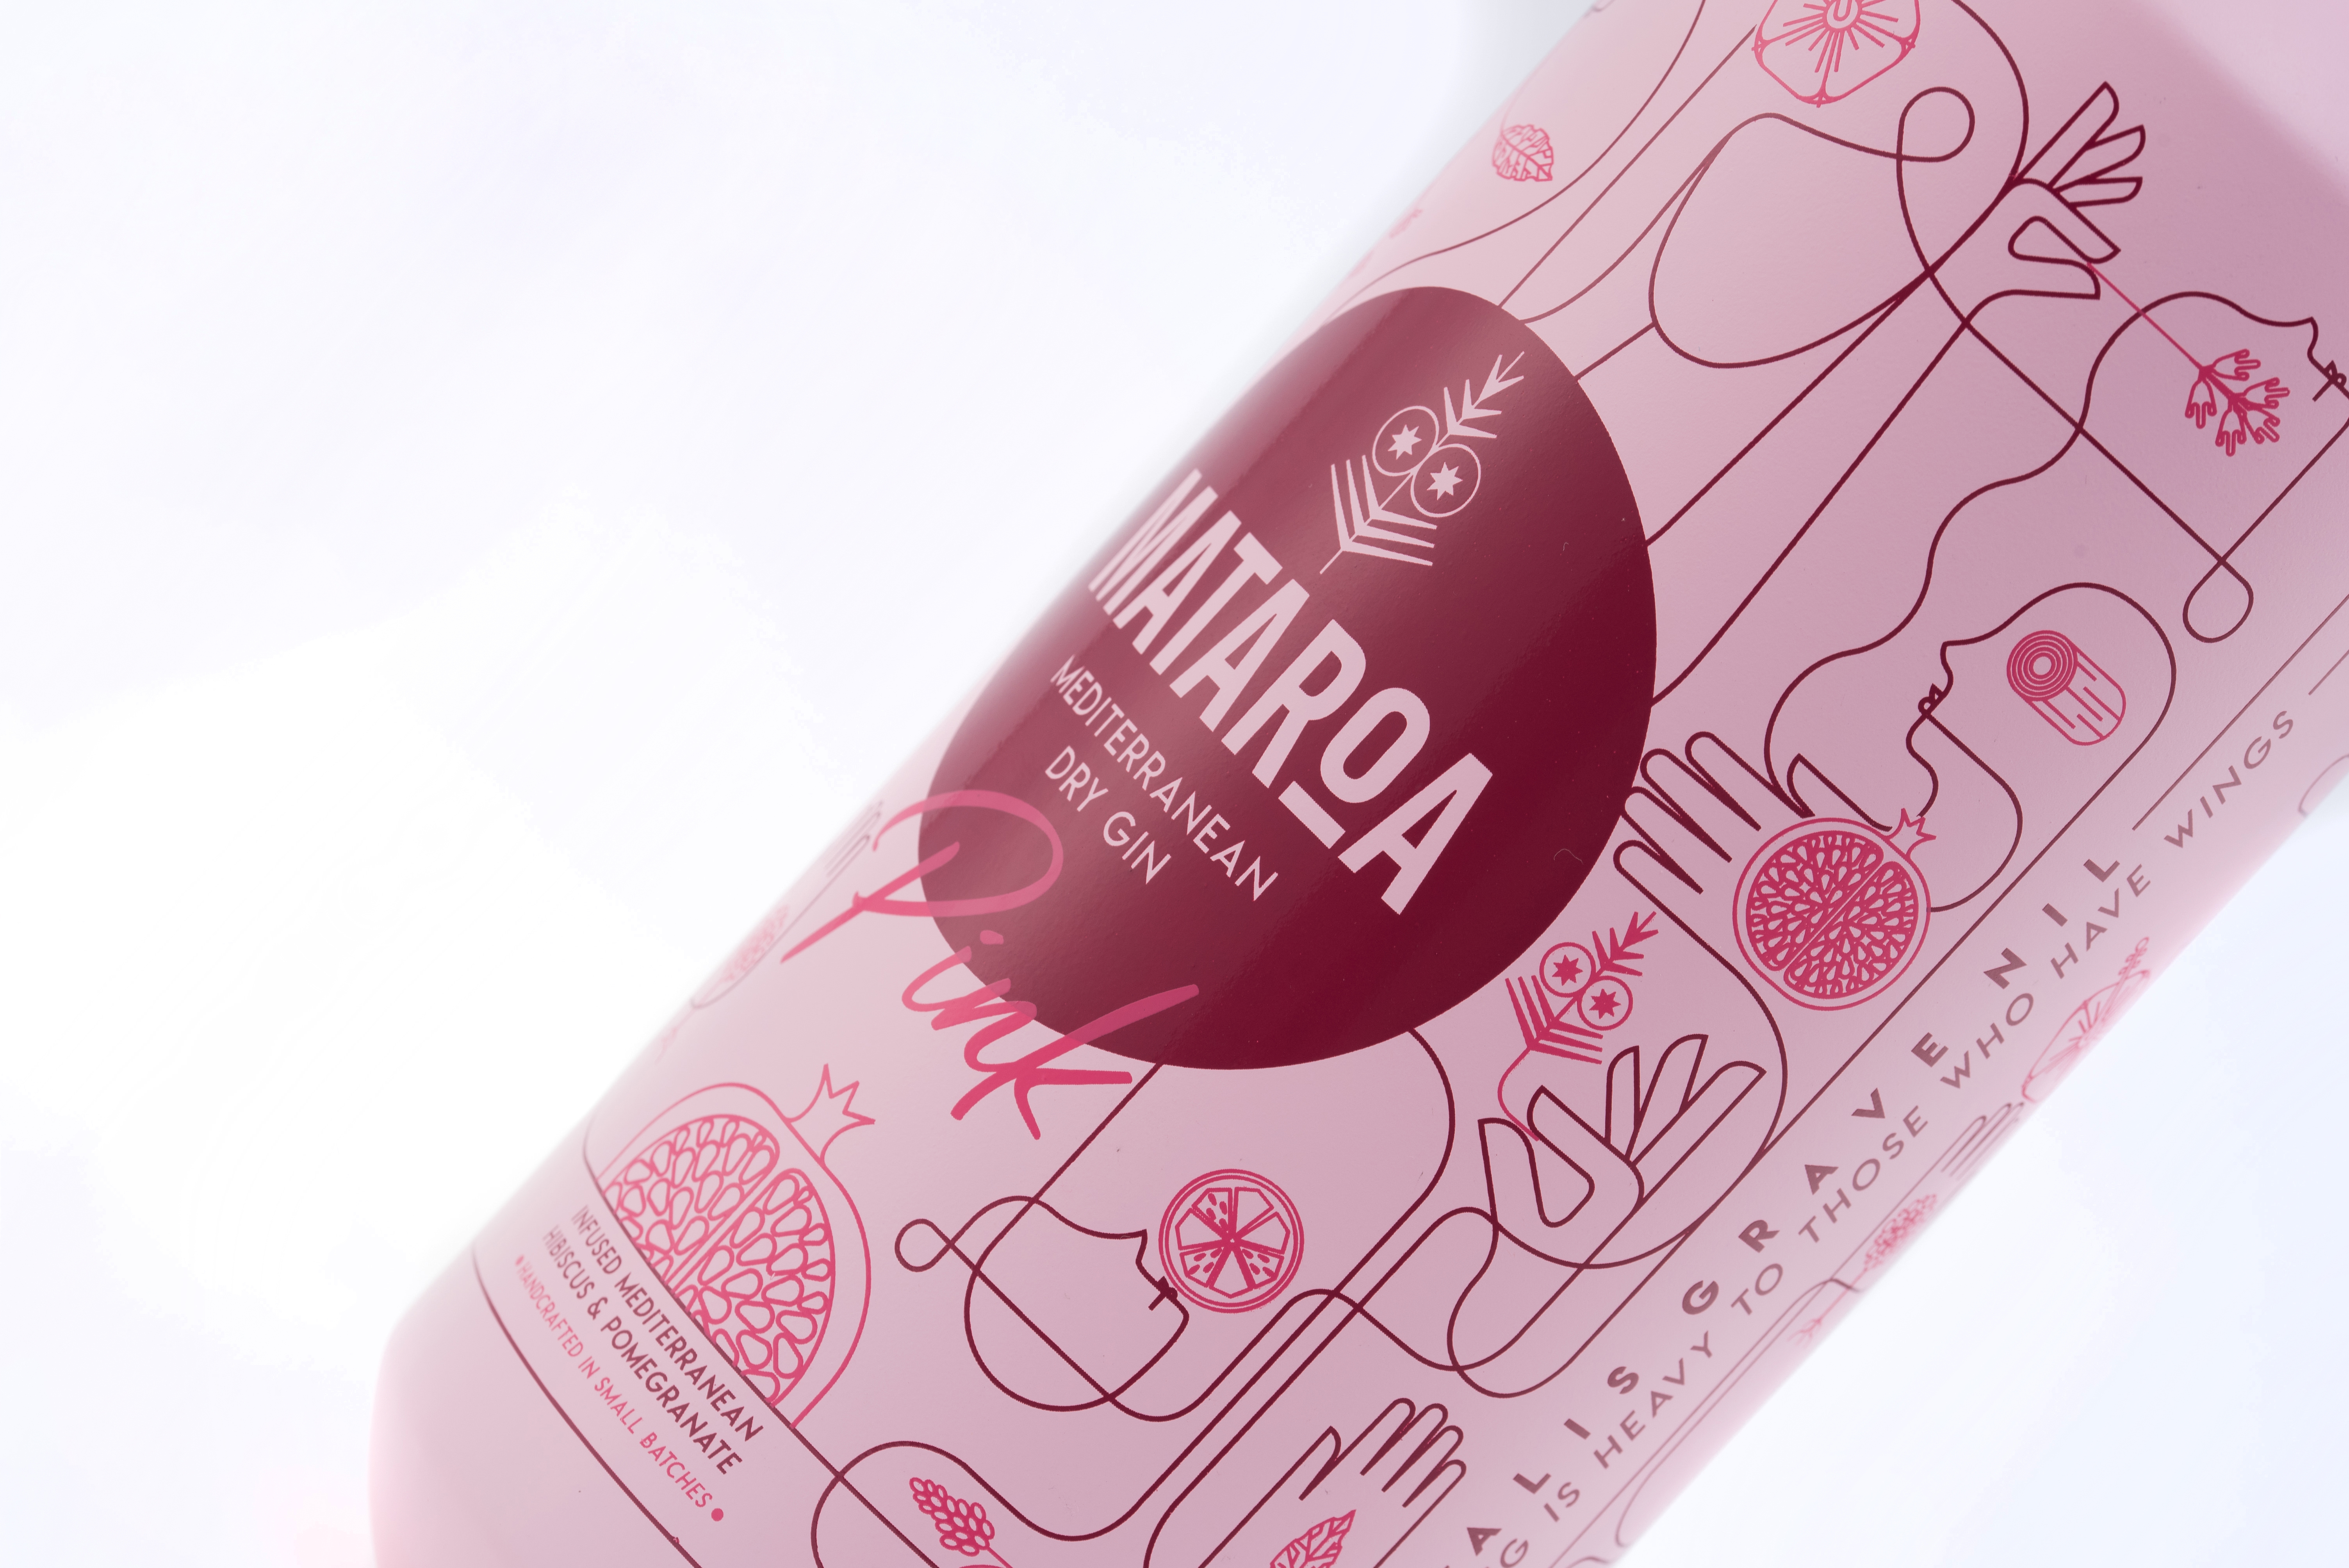 A bottle of Mataroa Pink Gin